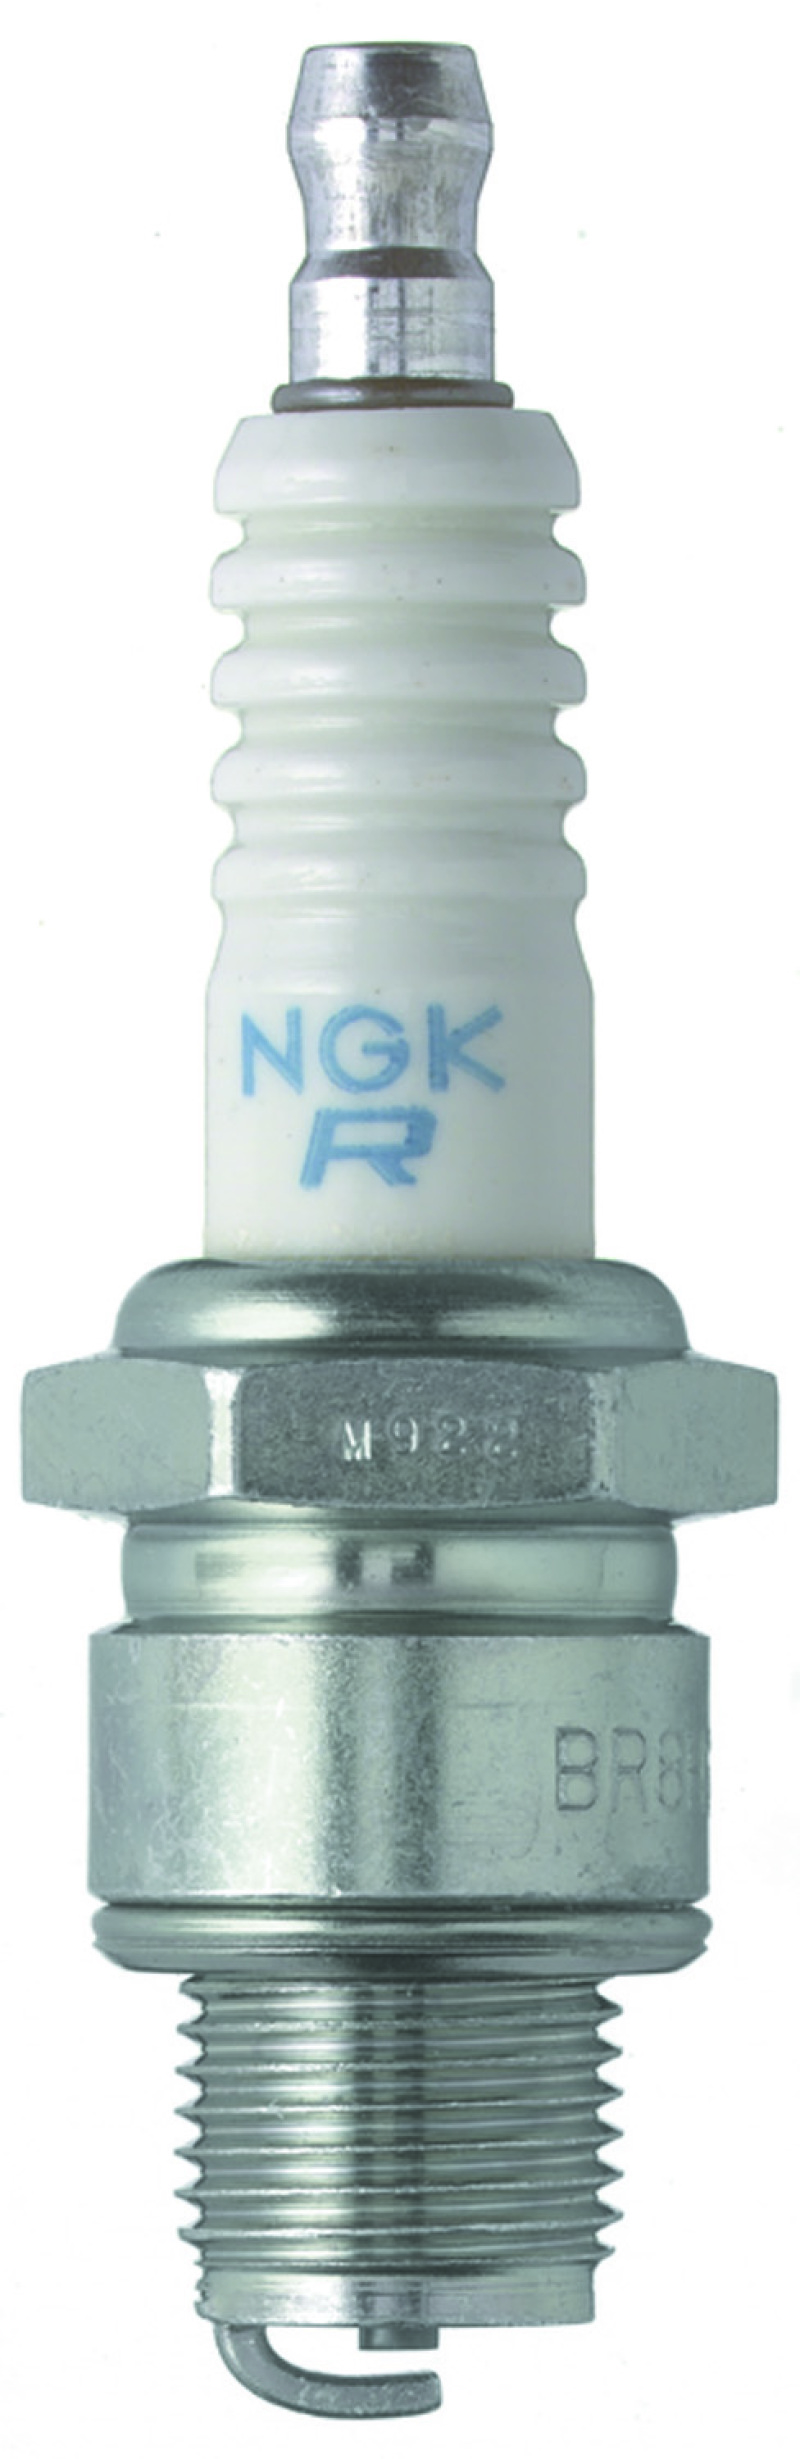 NGK Shop Pack Spark Plug Box of 25 (BR8HS-10) - 709